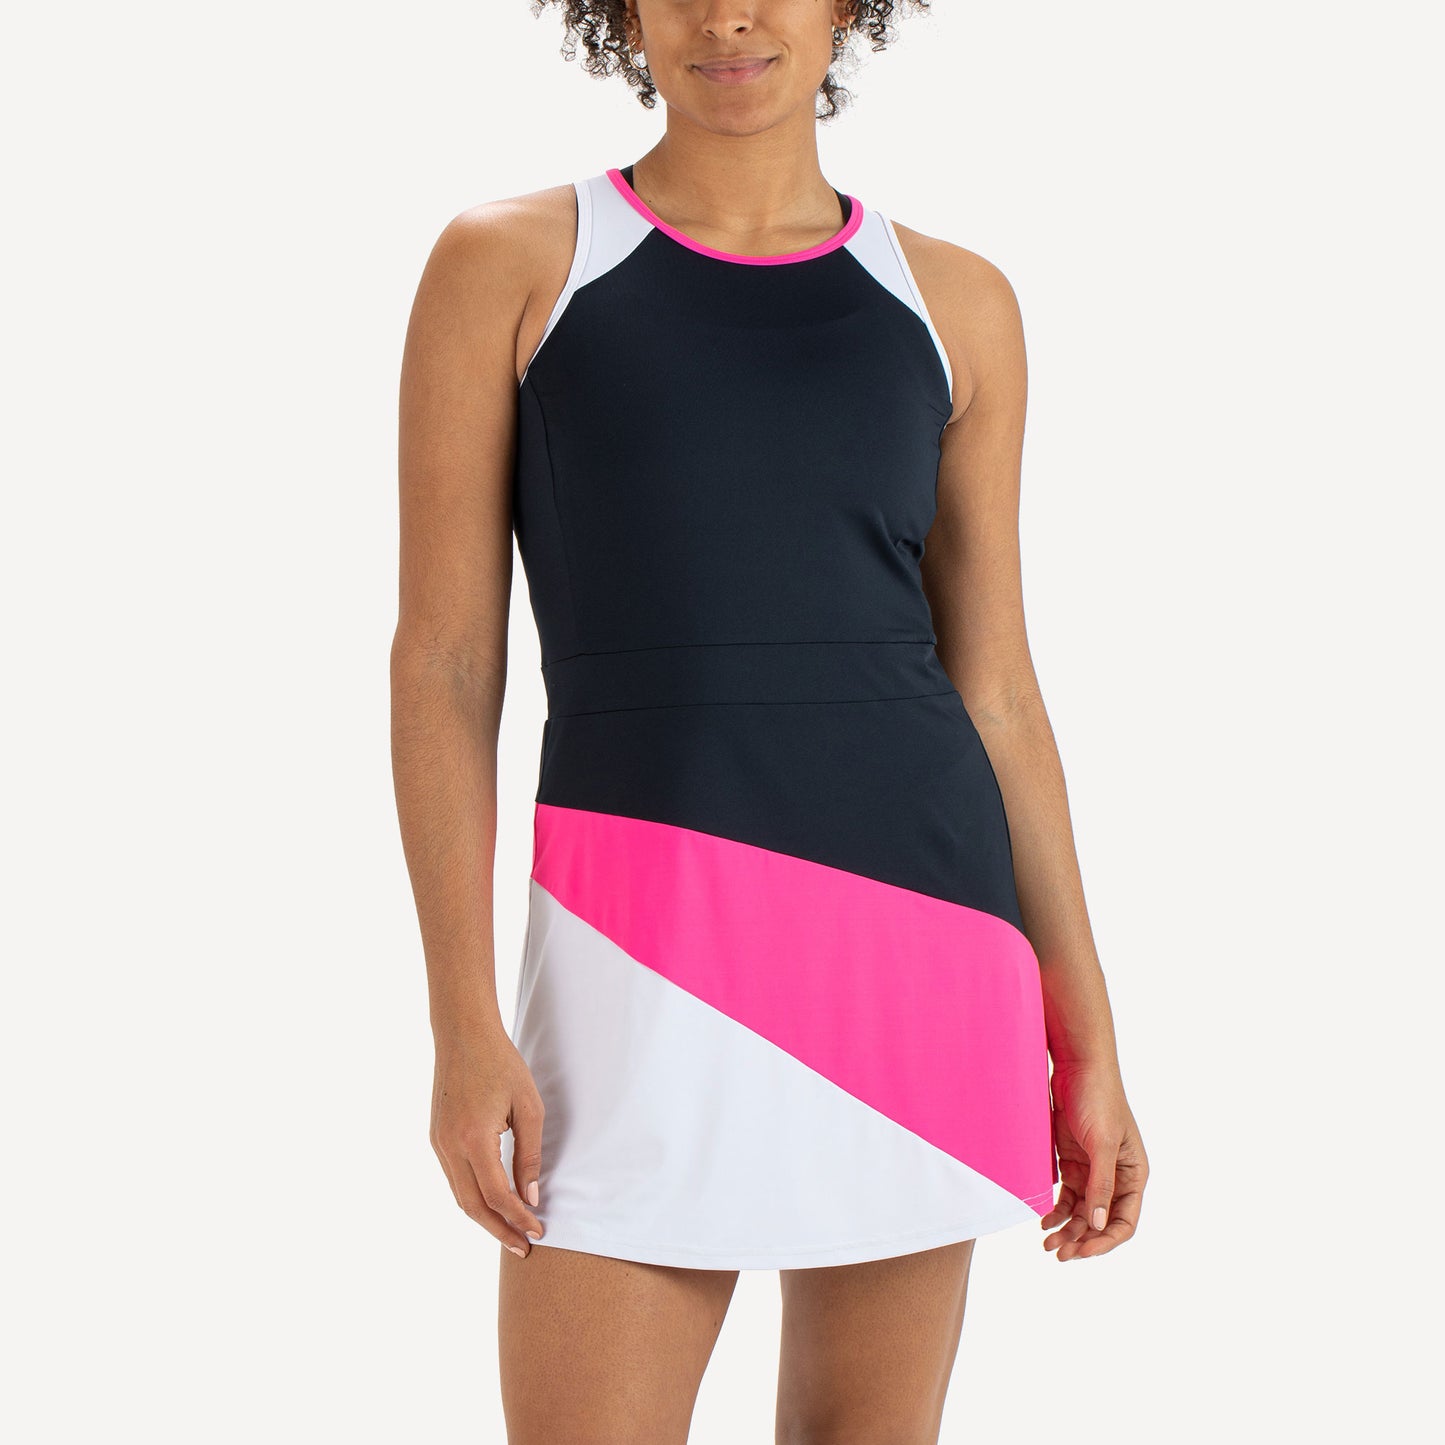 Sjeng Sports Elianne Women's Tennis Dress Pink (1)